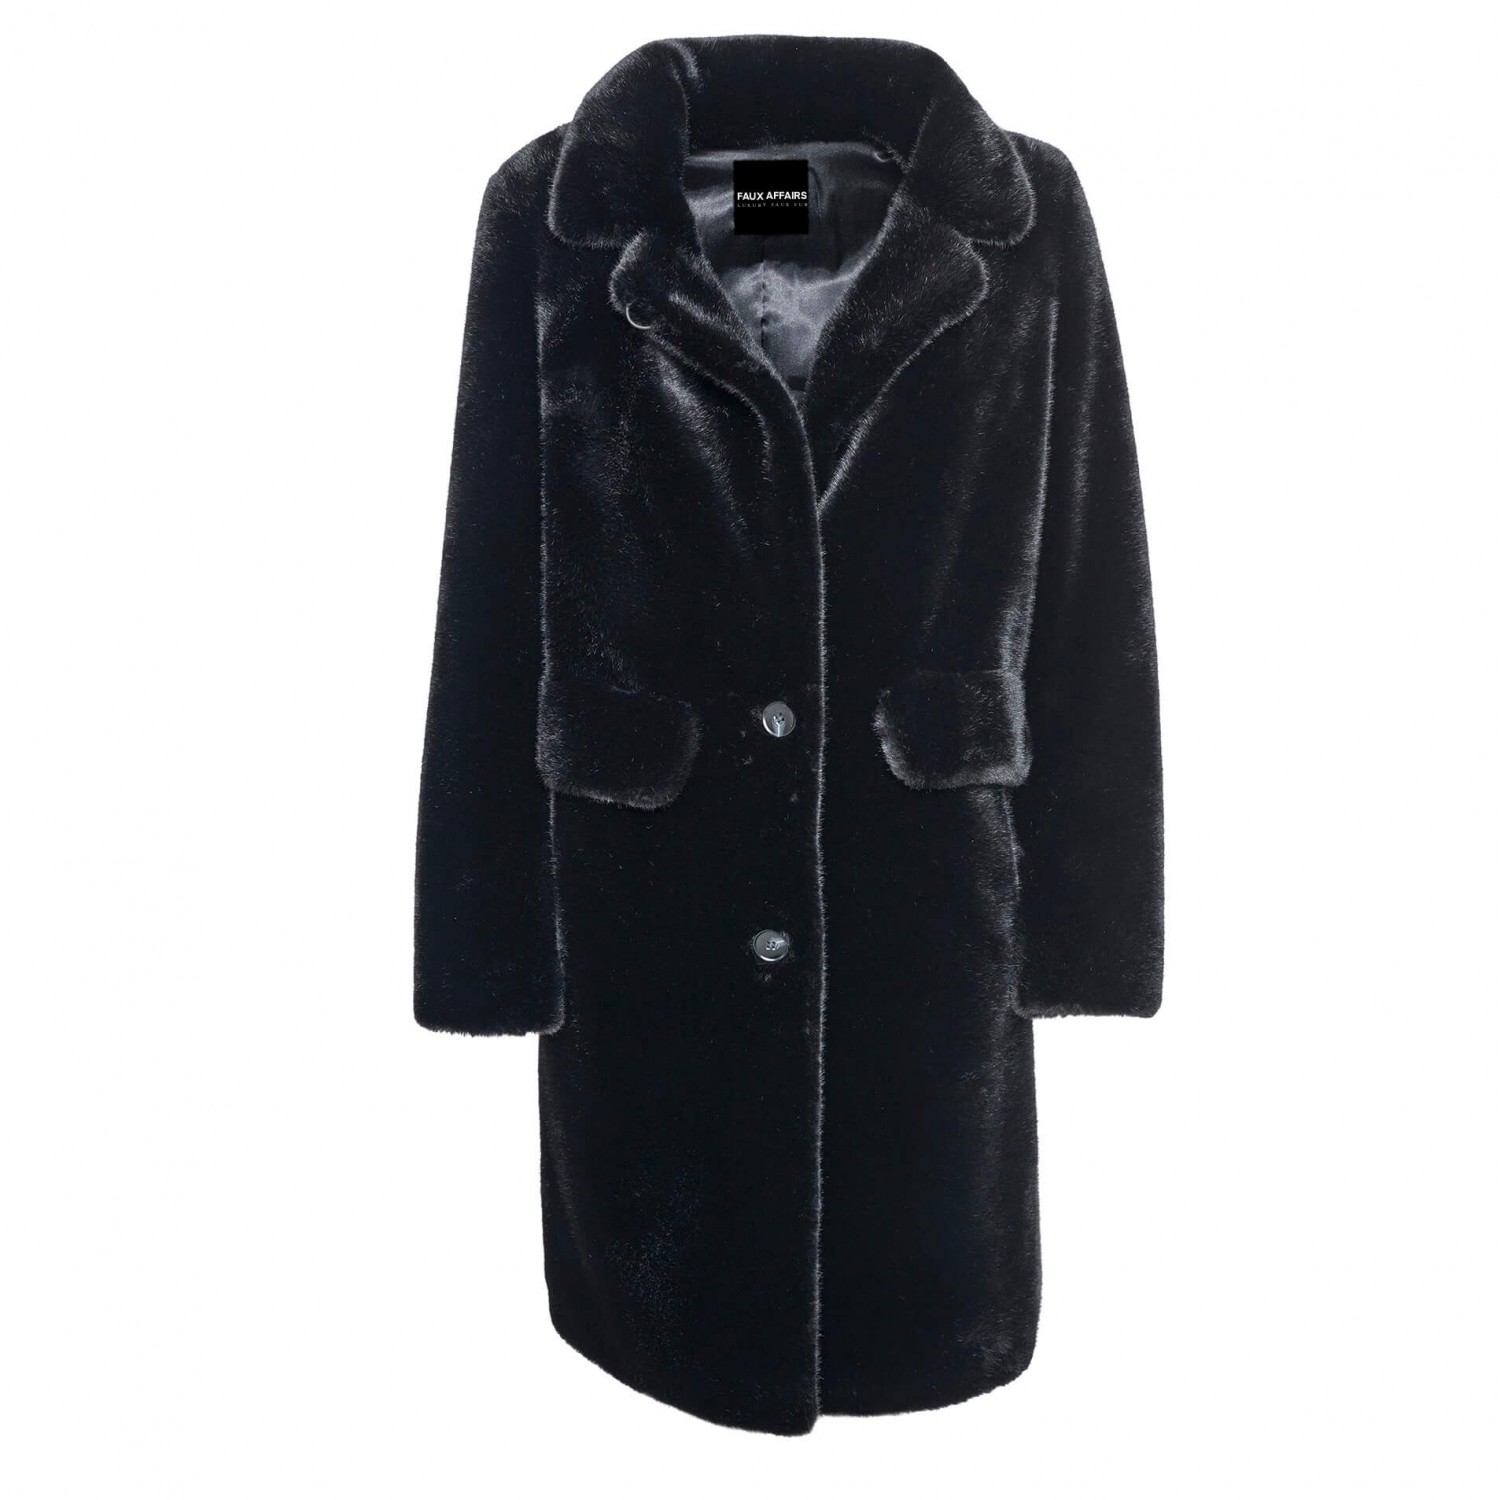 Wintercoat black